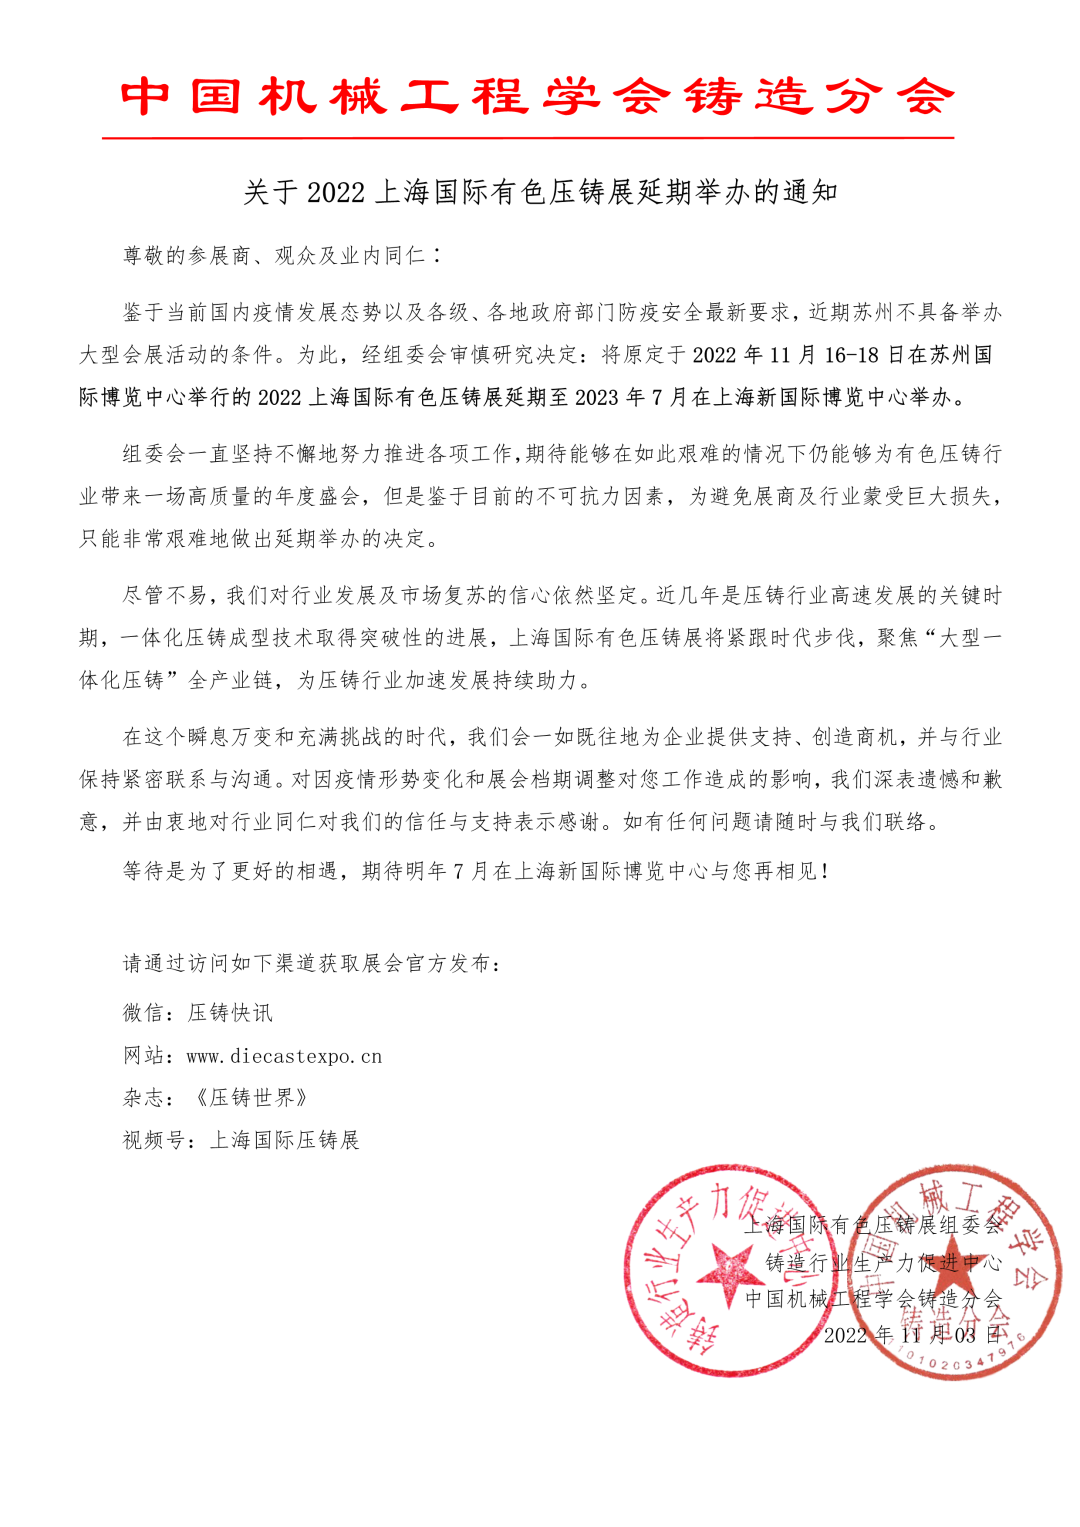 上海国际有色压铸展组委会正式通知